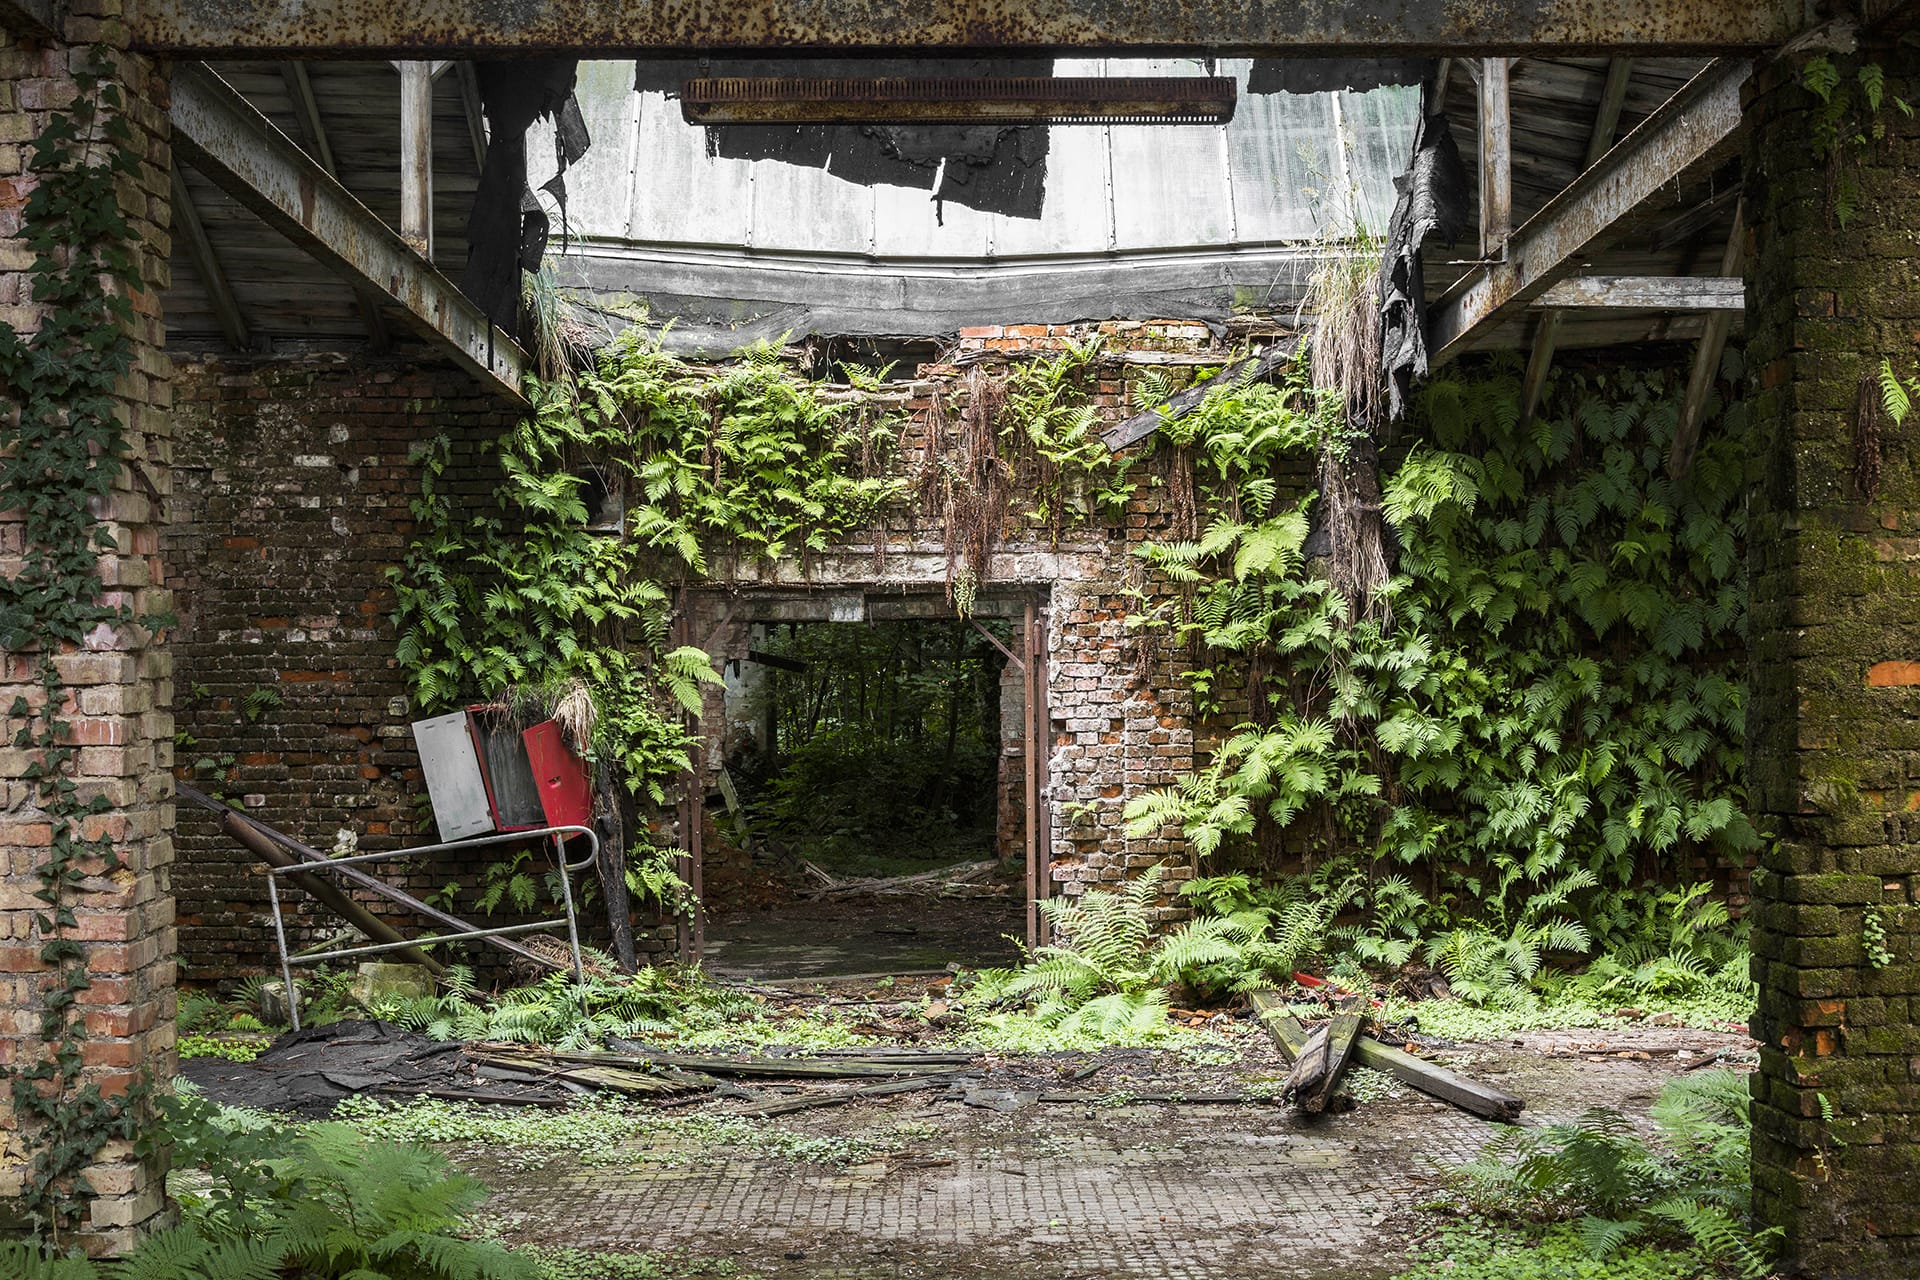 Porte d'une usine, les murs en brique sont recouverts de plantes